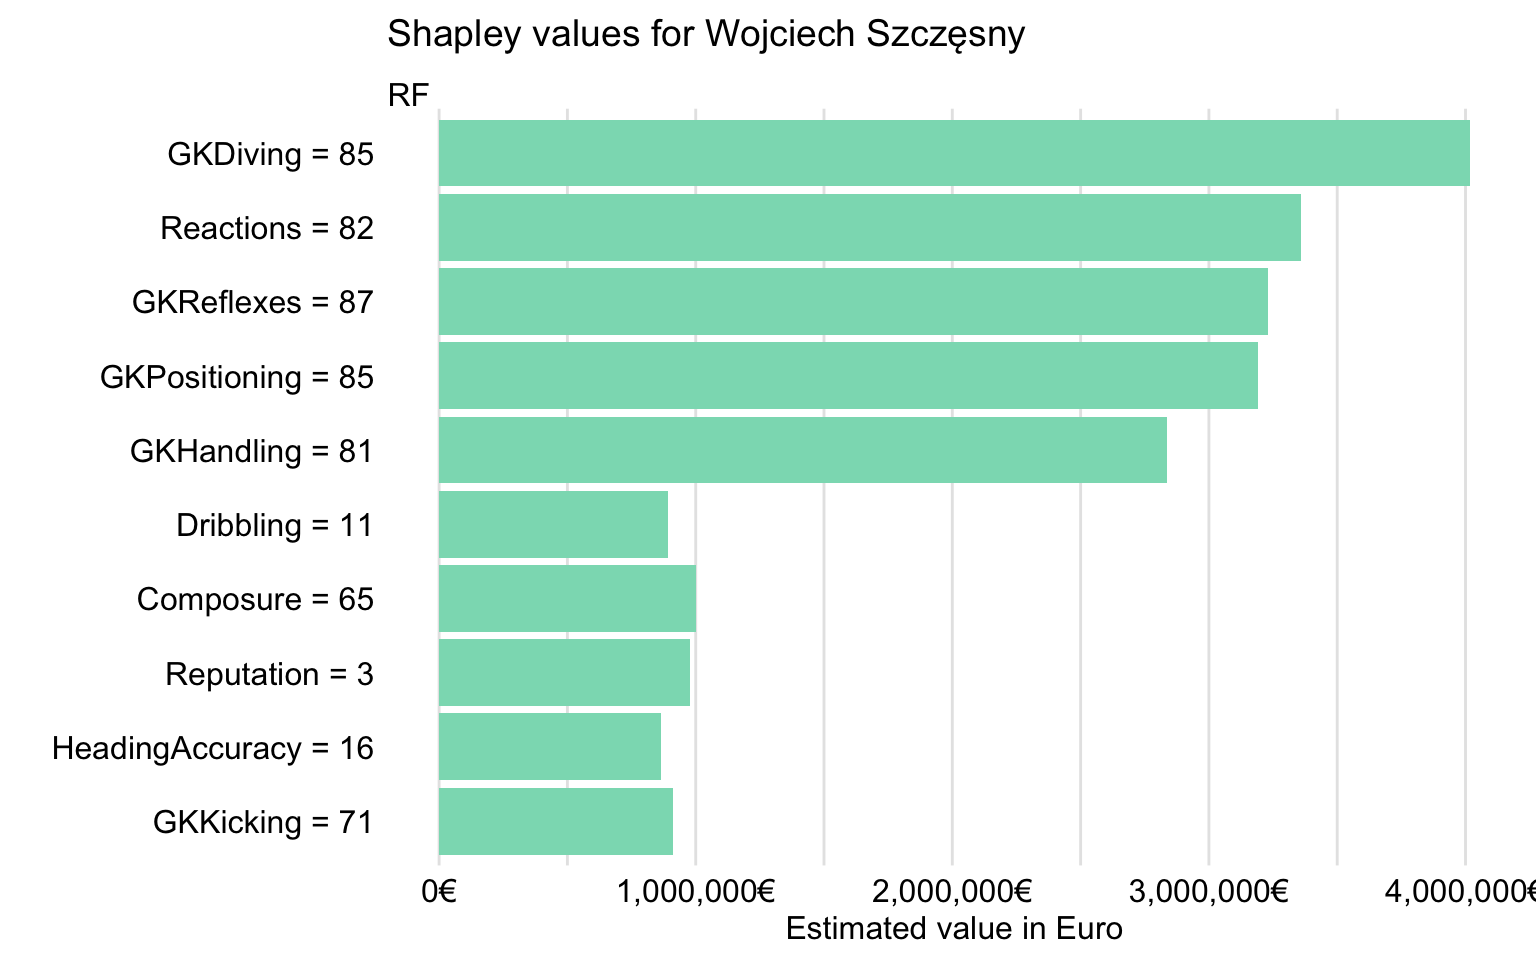 Shapley values for Wojciech Szczęsny for the random forest model.